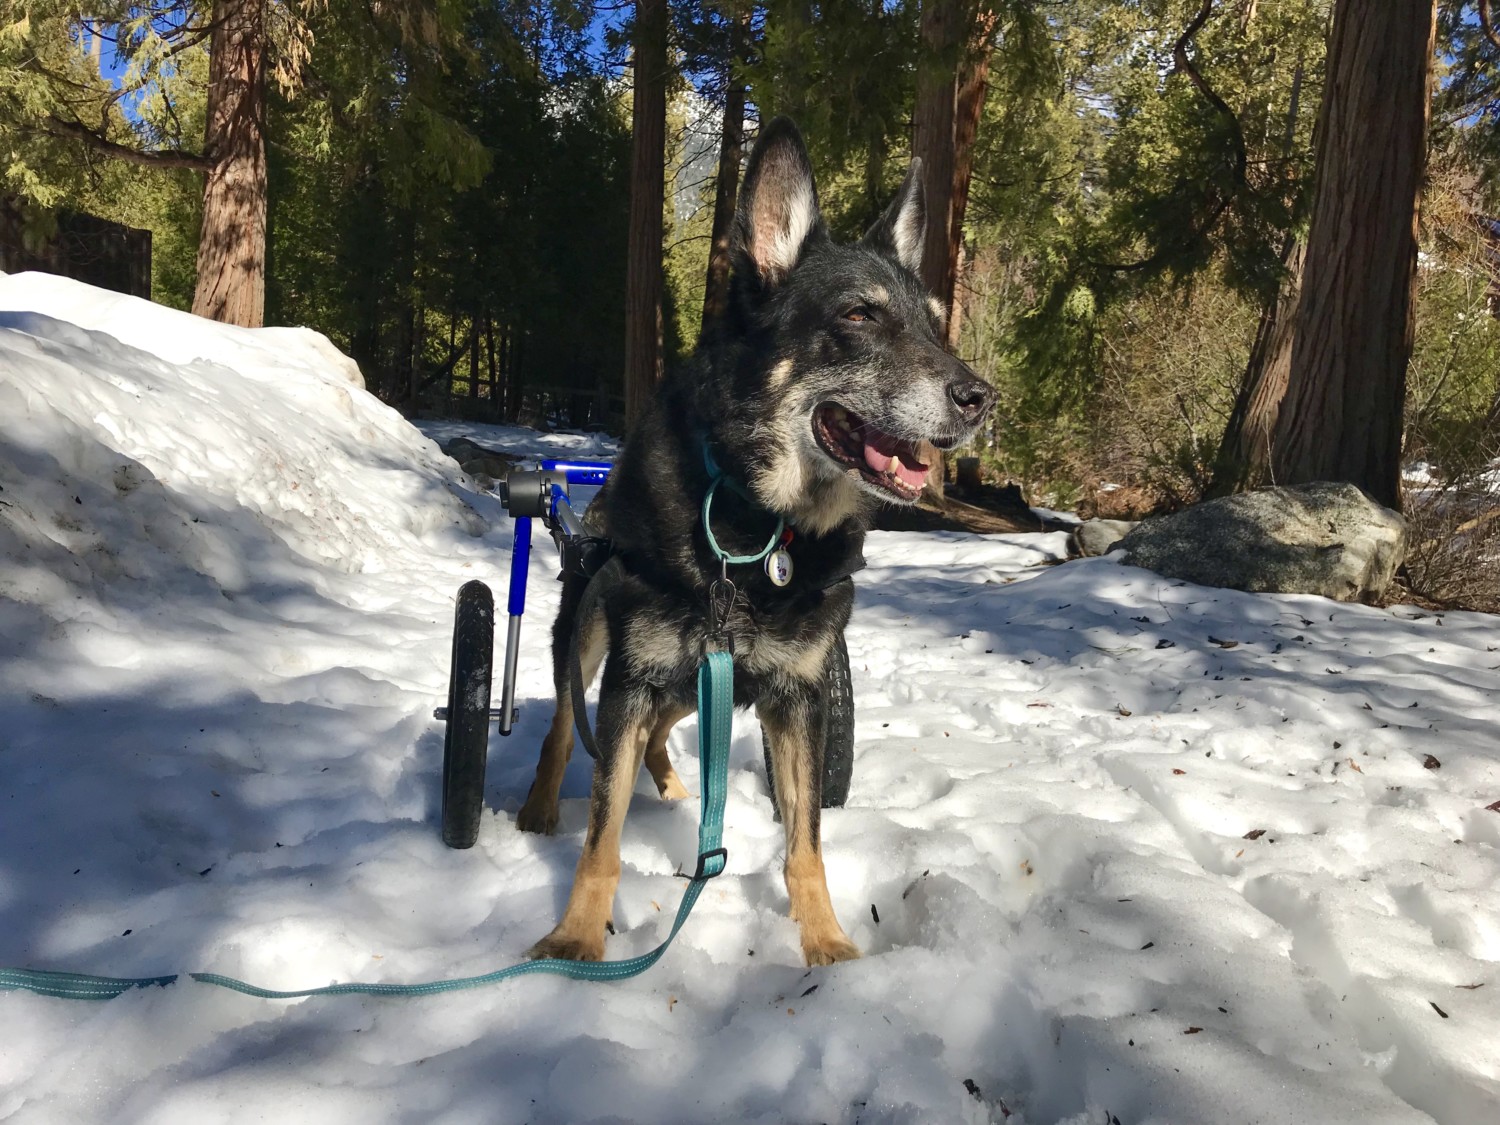 Buster de Duitse herder in zijn hondenrolstoel in de sneeuw